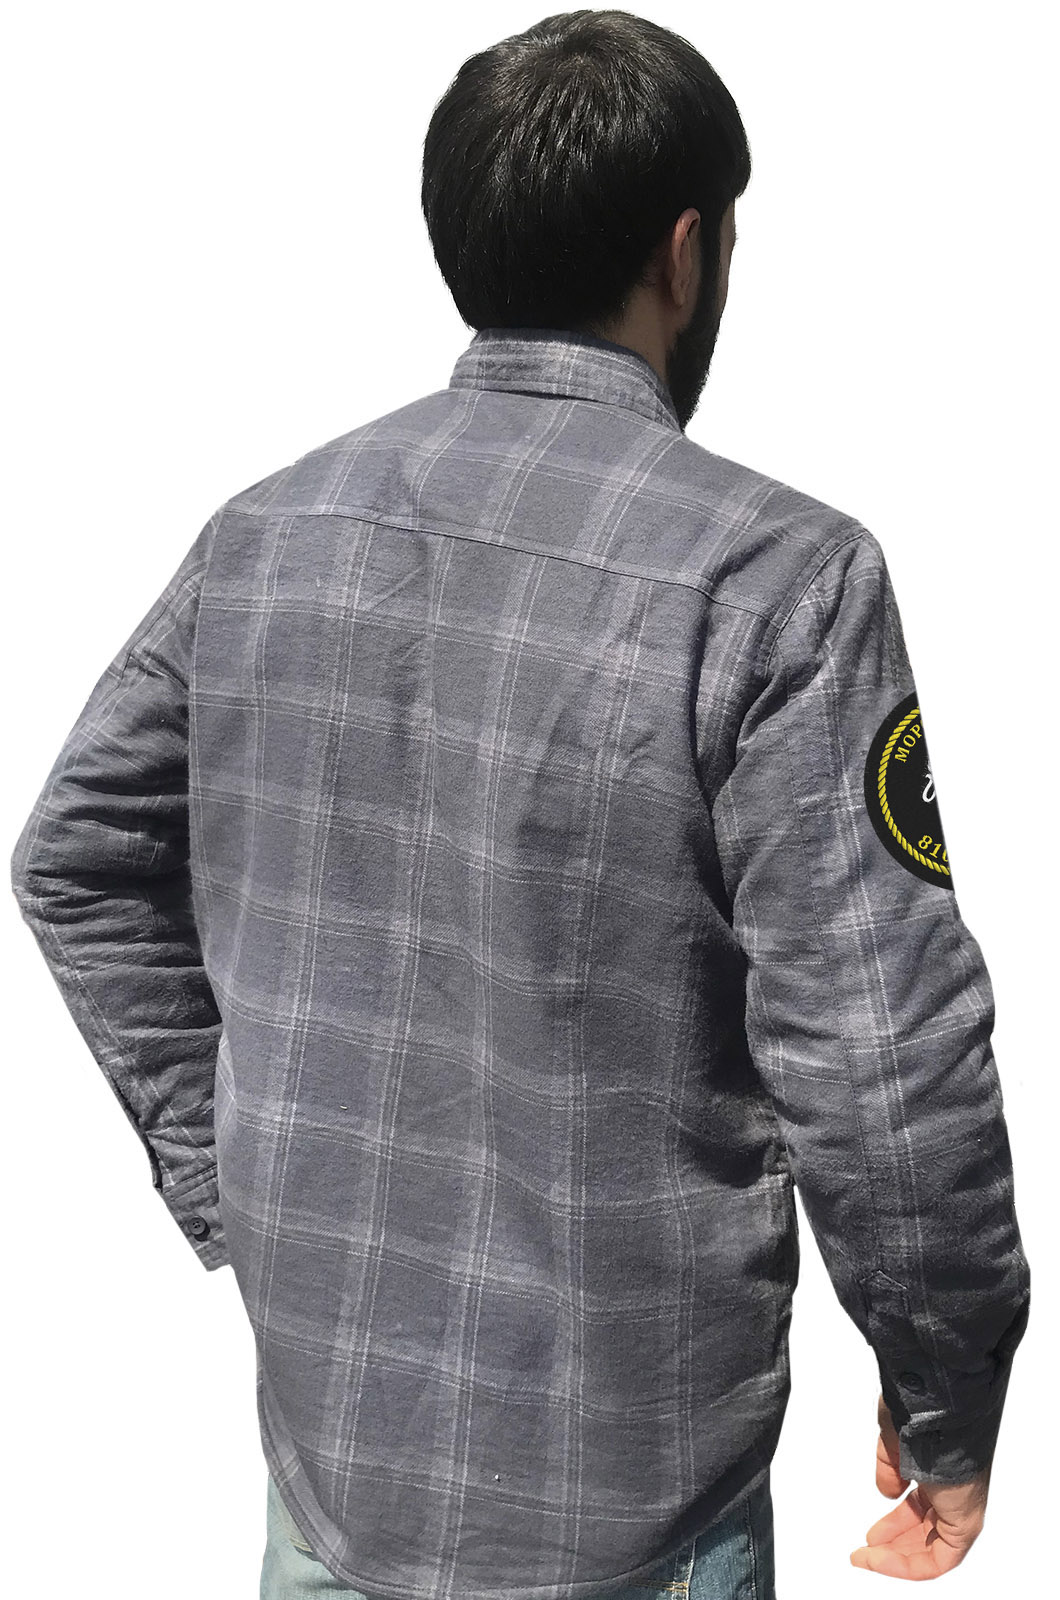 Демисезонная рубашка с эмблемой 810-ой ОБрМП Морская Пехота заказать онлайн